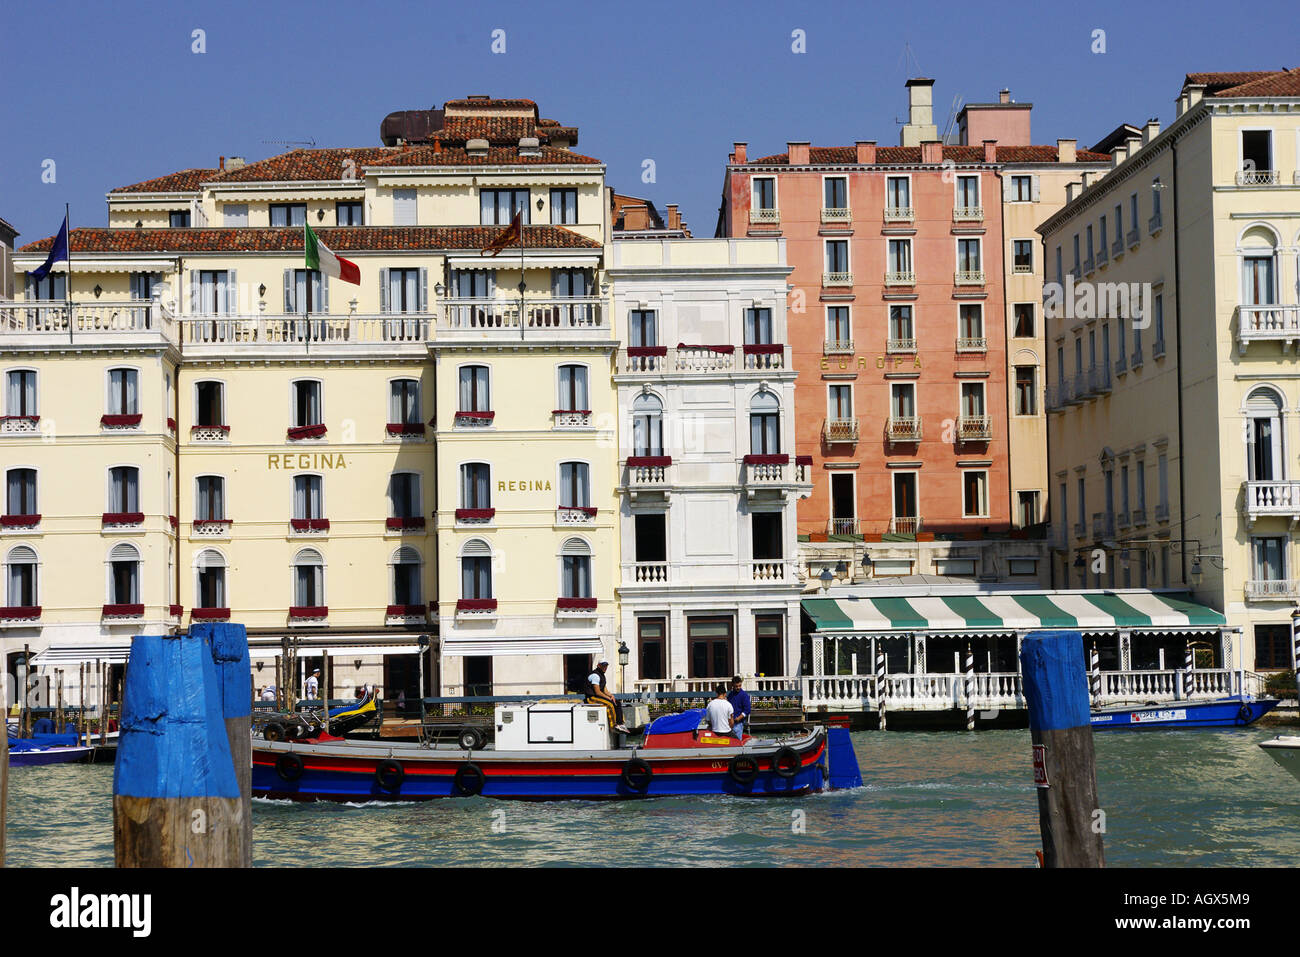 Ein Blick auf den Kanal mit bunten Gondeln und alte Originalgebäude von Menschen in Cafés im freien Stockfoto